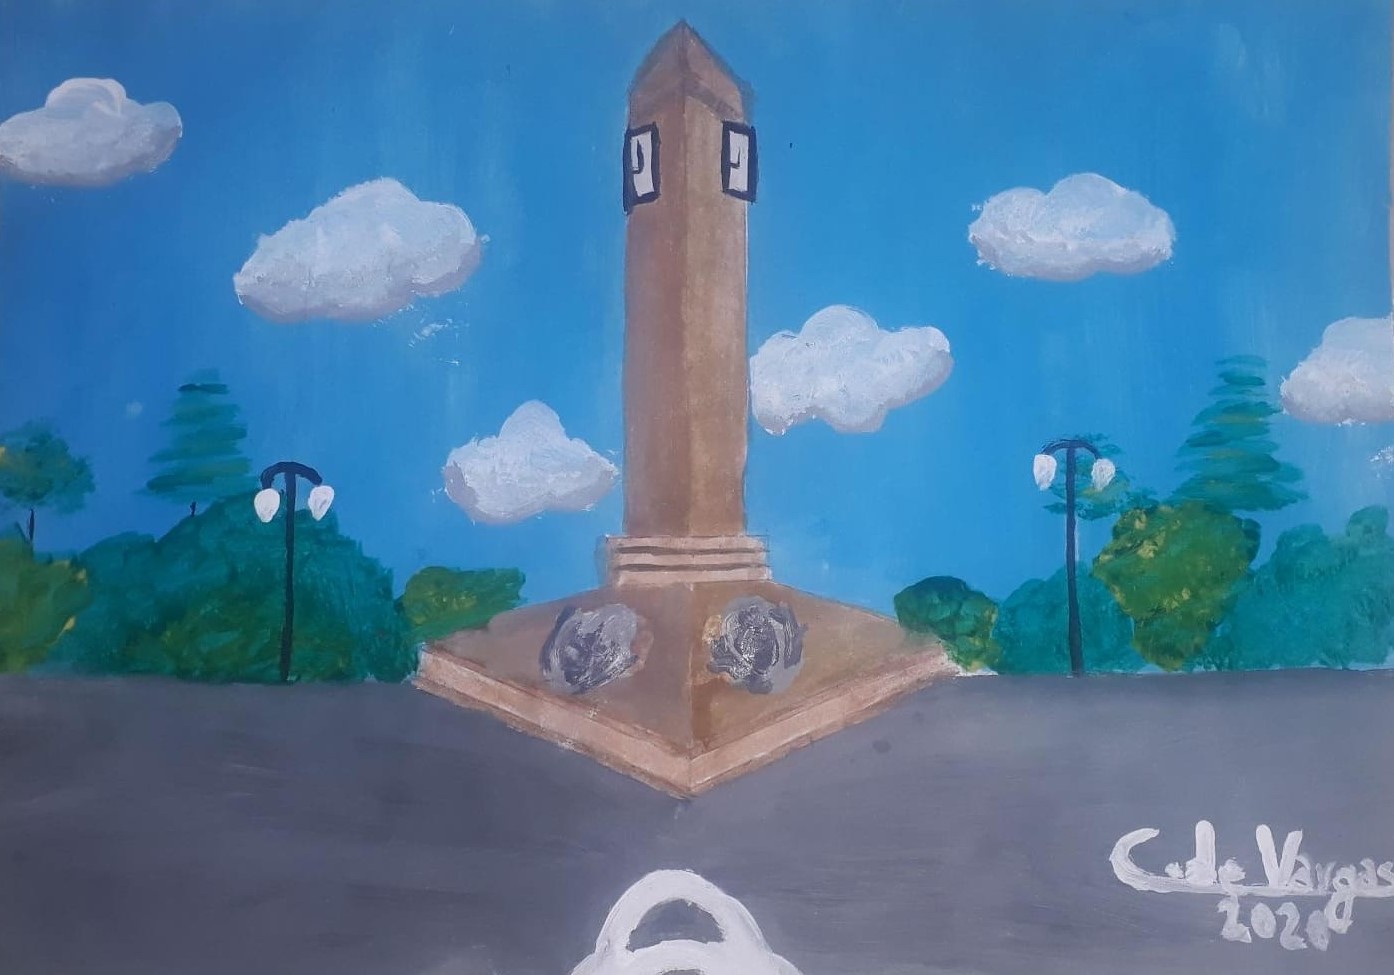 Los elementos presentes en la imagen son: el Obelisco, y en su entorno la vegetación de la Plaza.